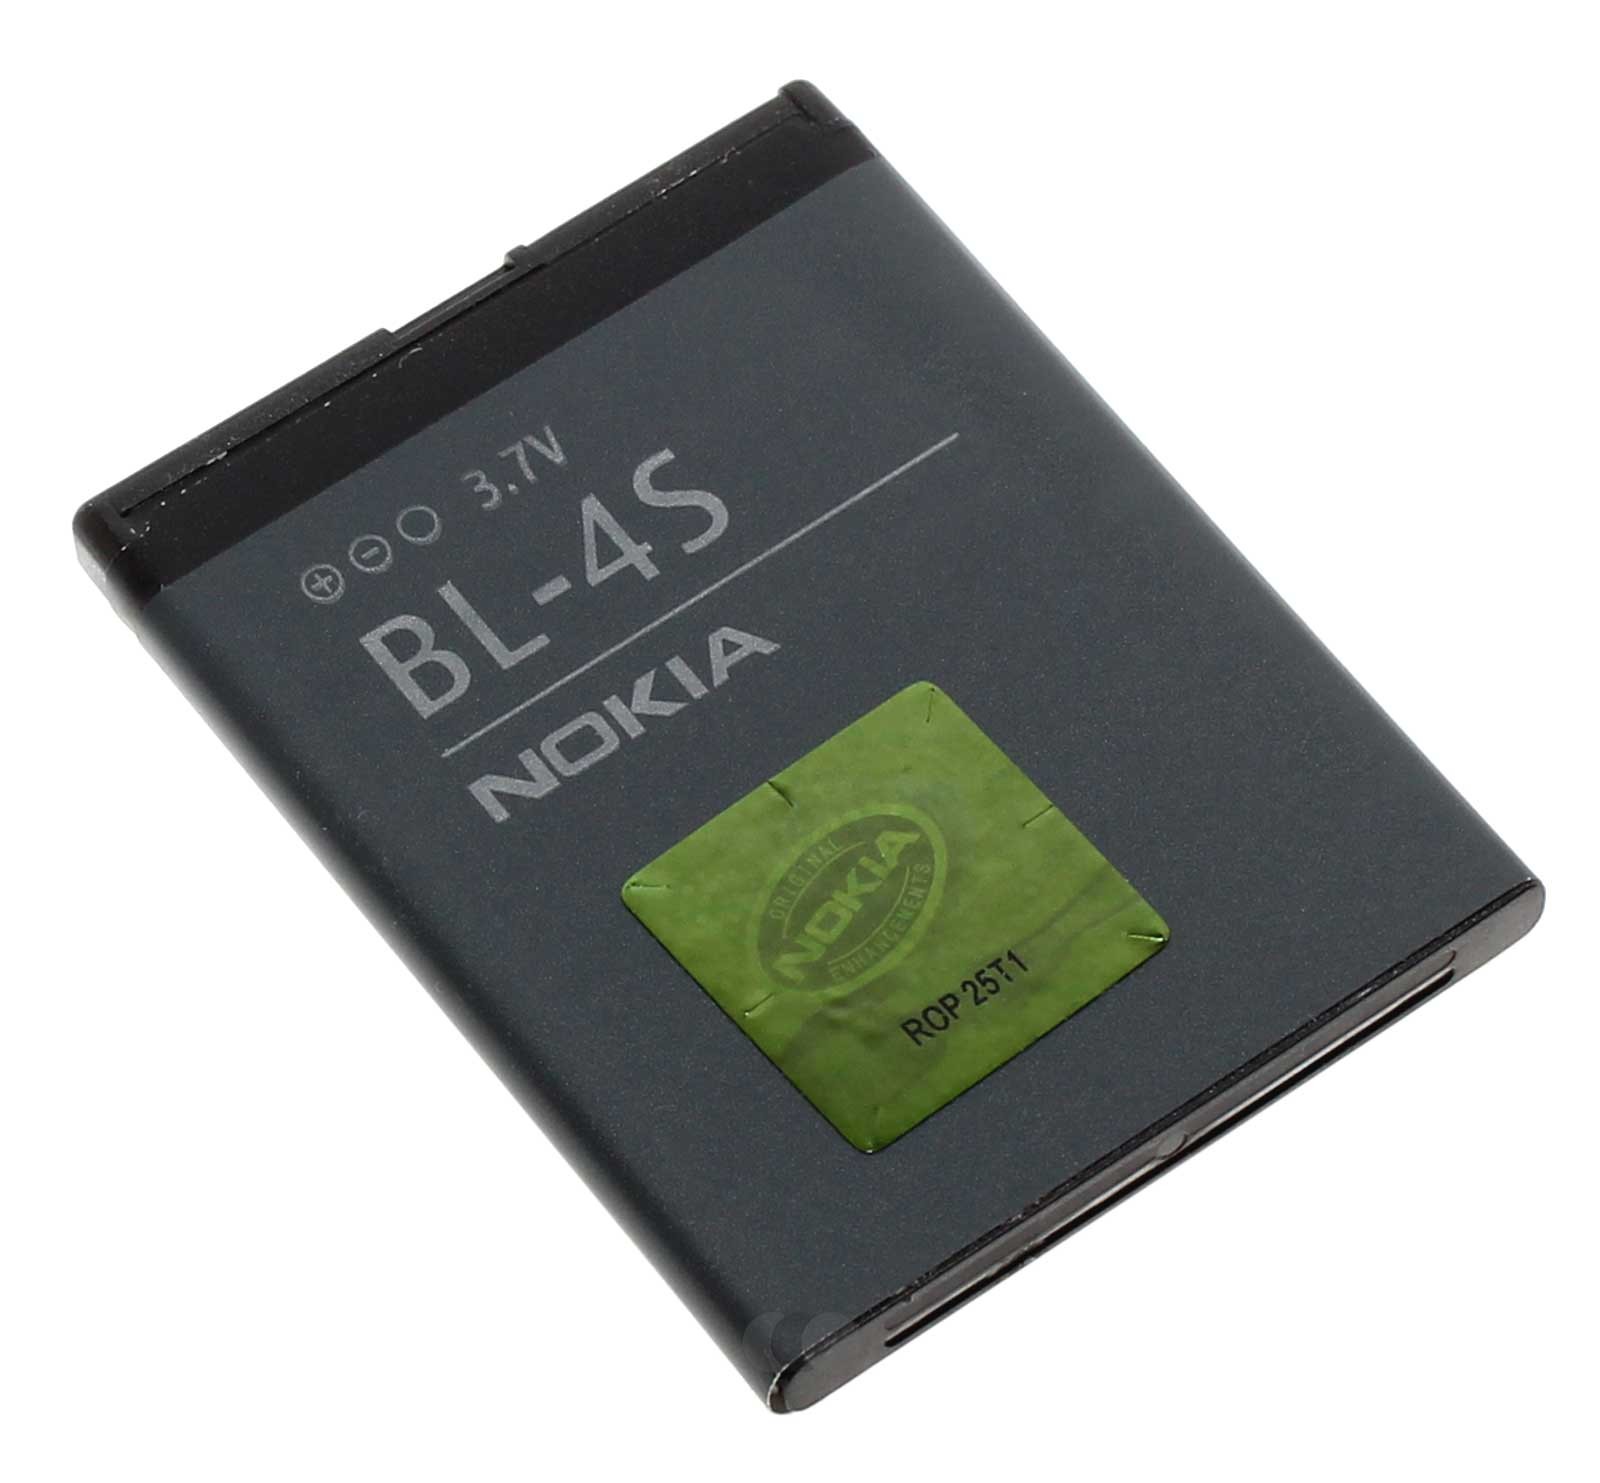 3,7V Nokia Akku BL-4S für Handy 2680 3600 Slide 7610S 3600S 6208, 860mAh